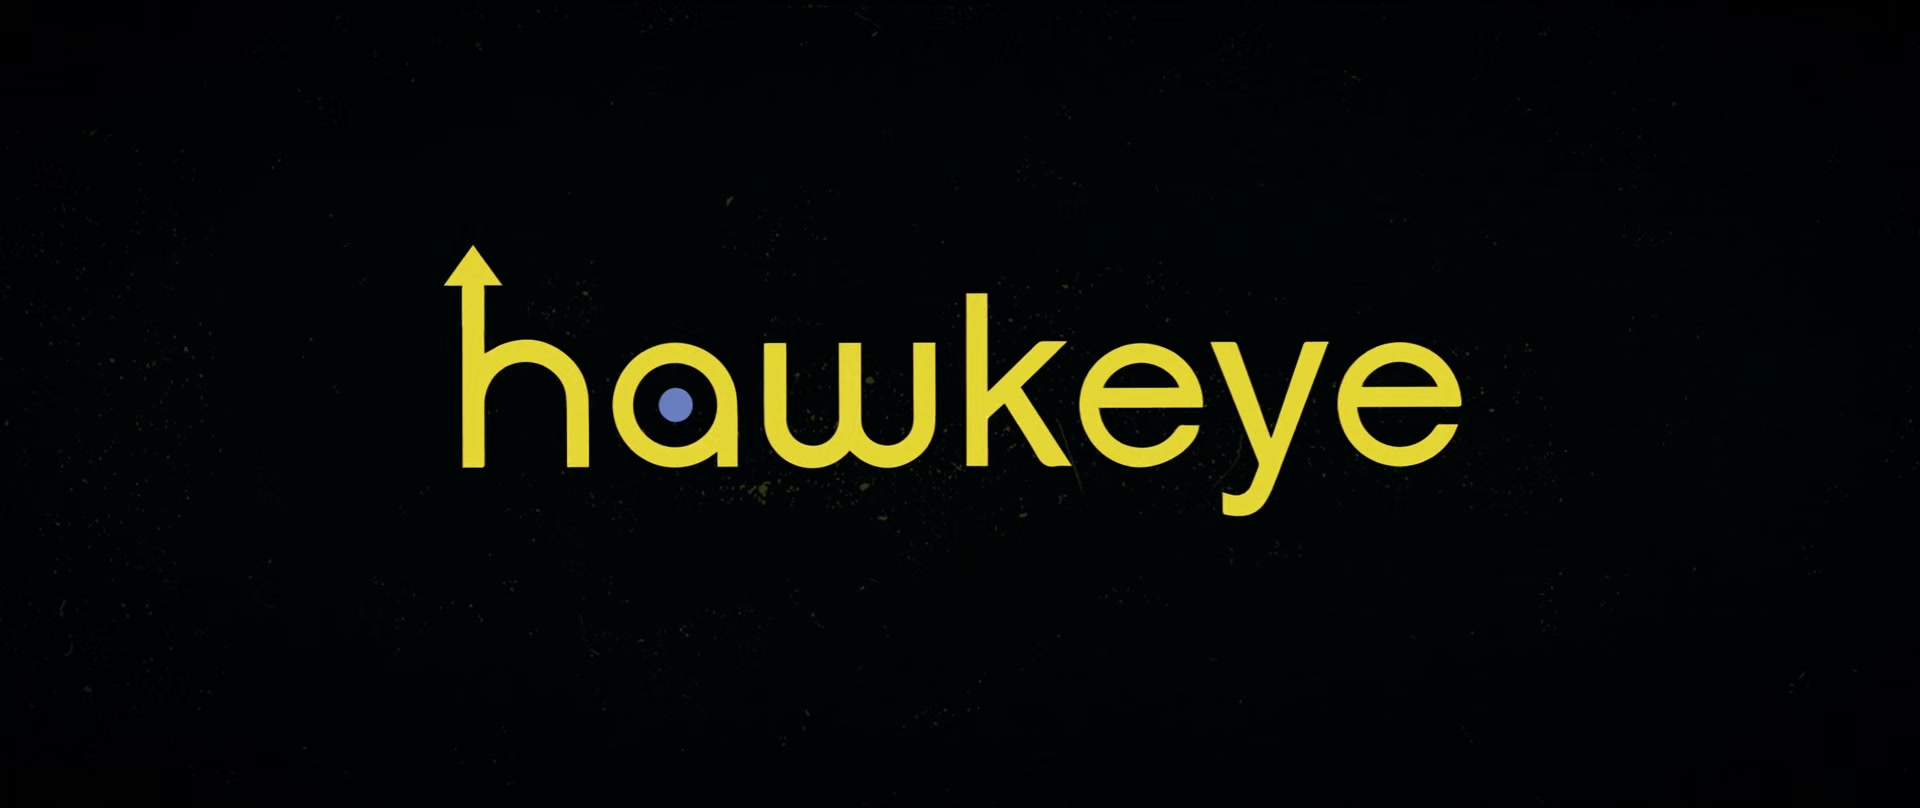 Hawkeye02_0090.jpg